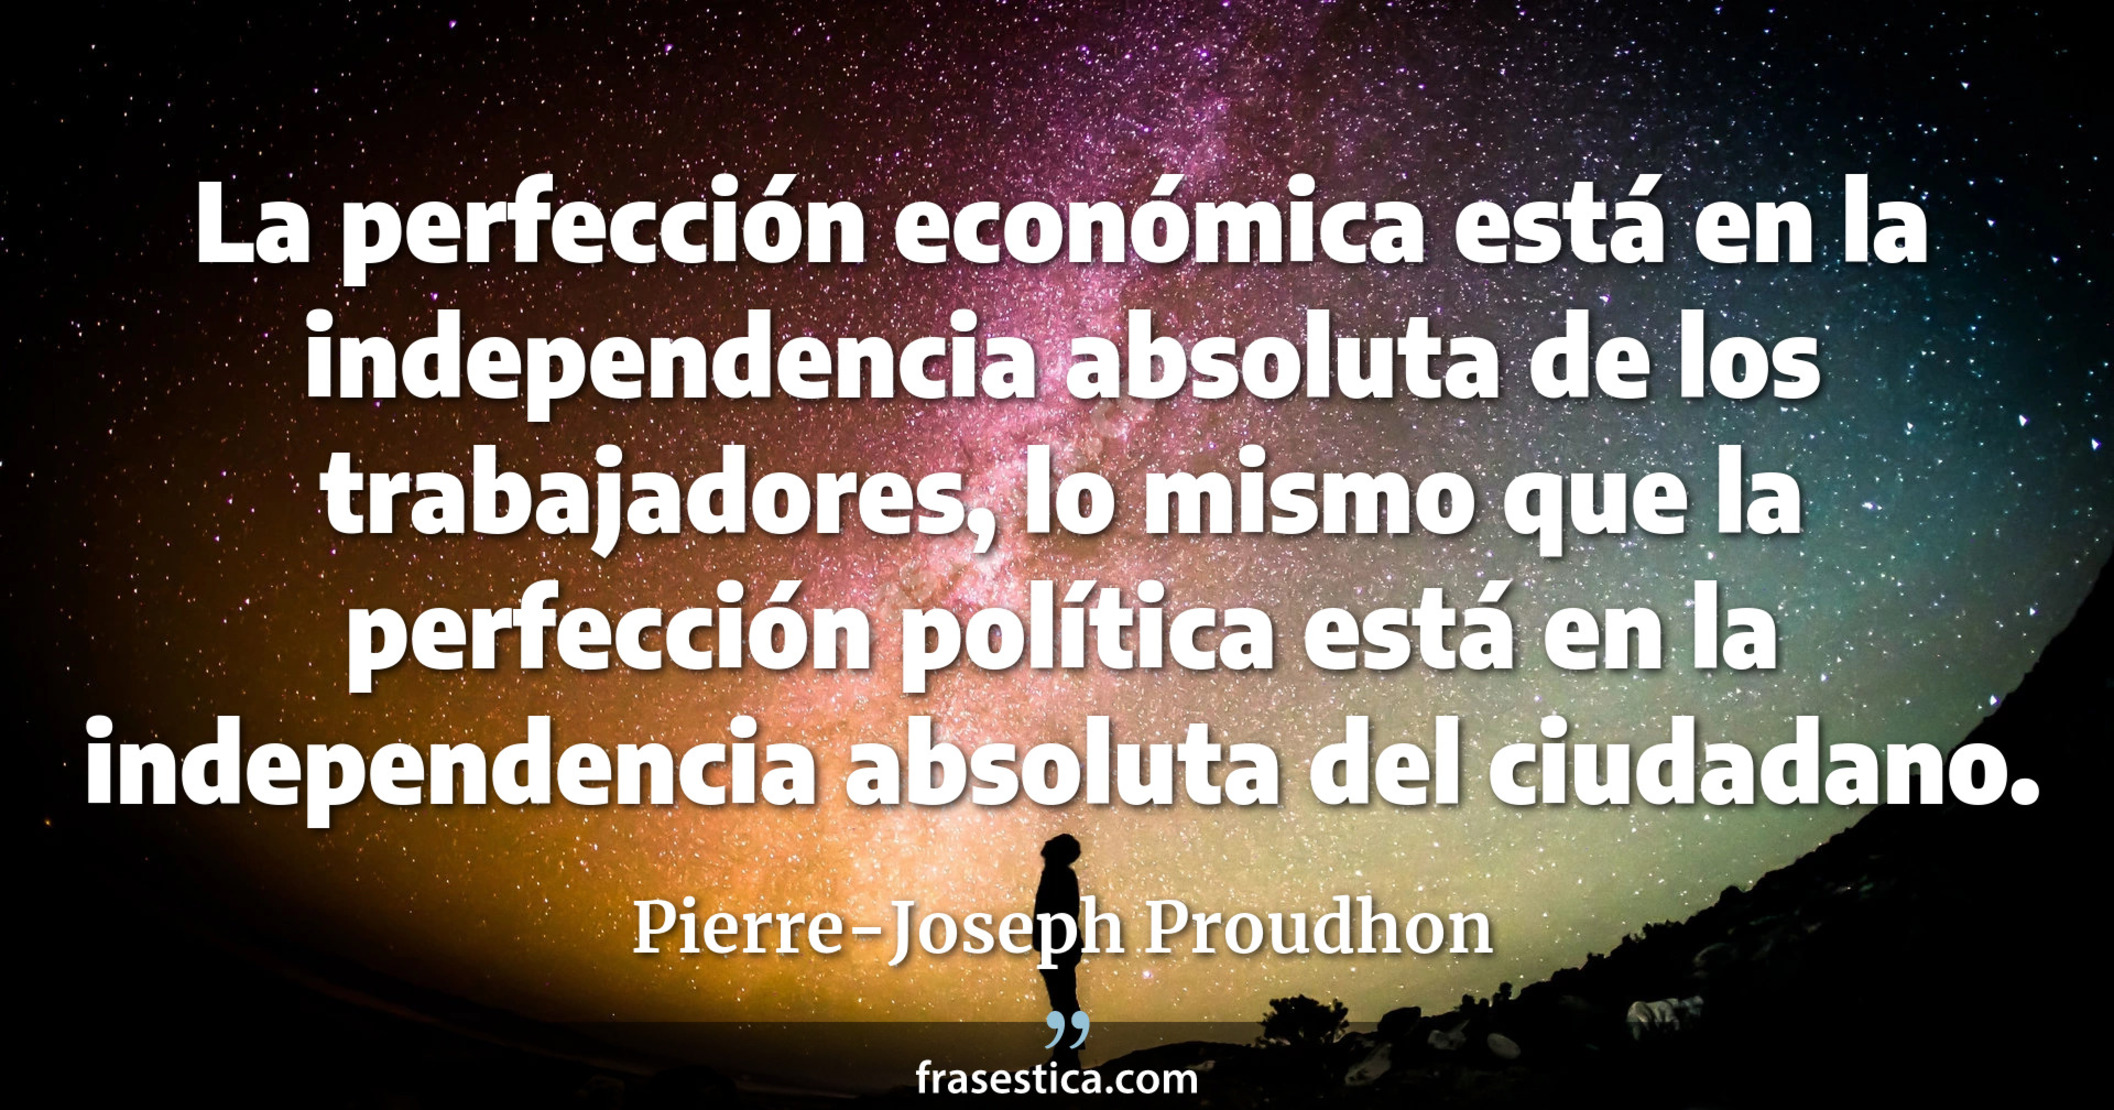 La perfección económica está en la independencia absoluta de los trabajadores, lo mismo que la perfección política está en la independencia absoluta del ciudadano. - Pierre-Joseph Proudhon